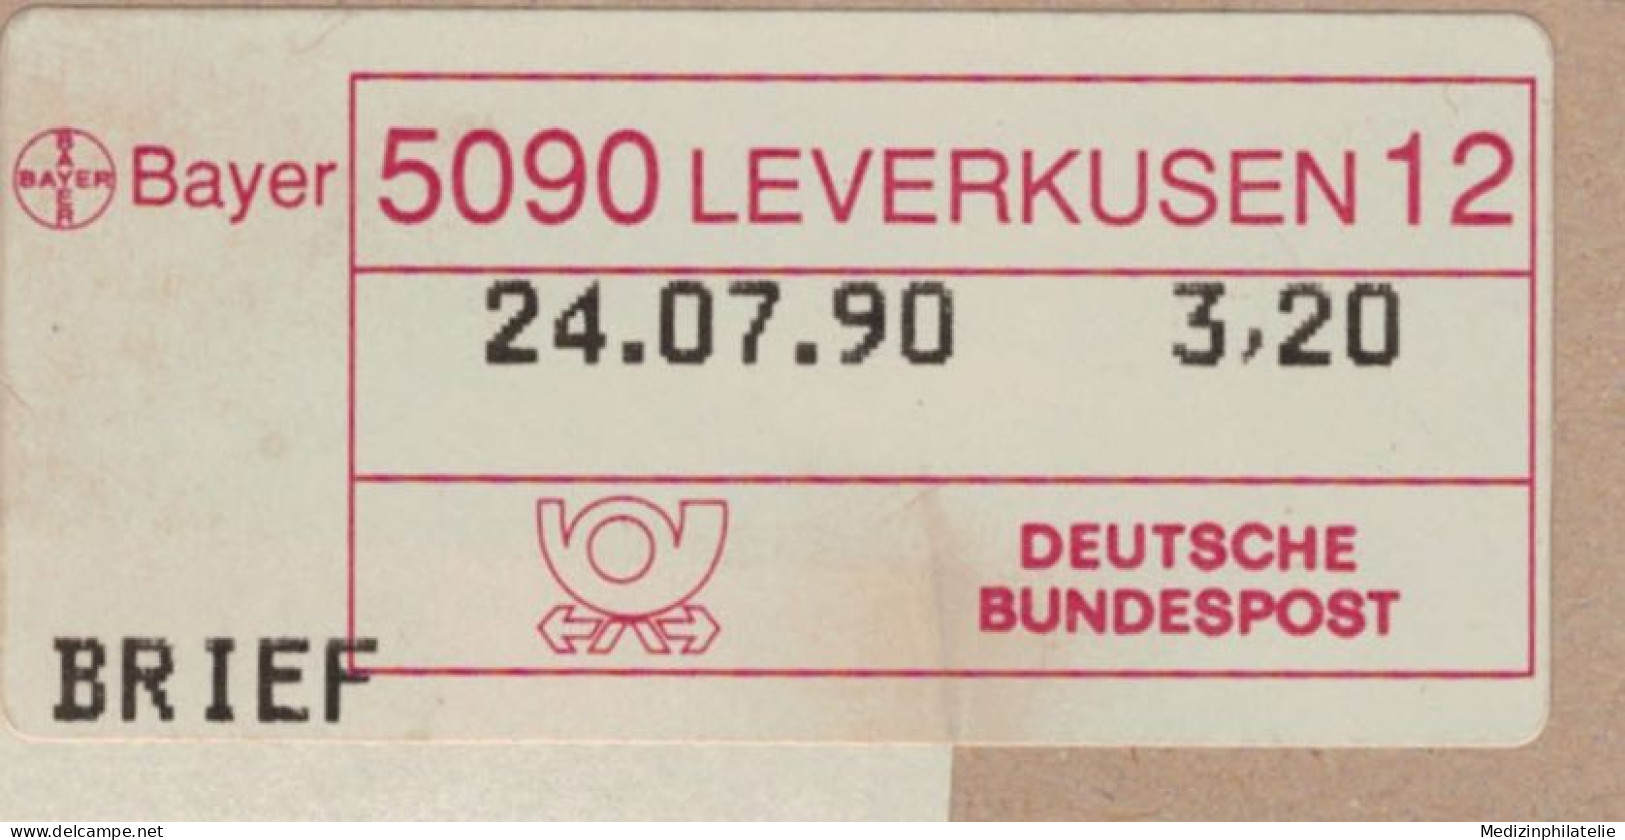 Bayer Leverkusen 1990 Label Brief - Medicine